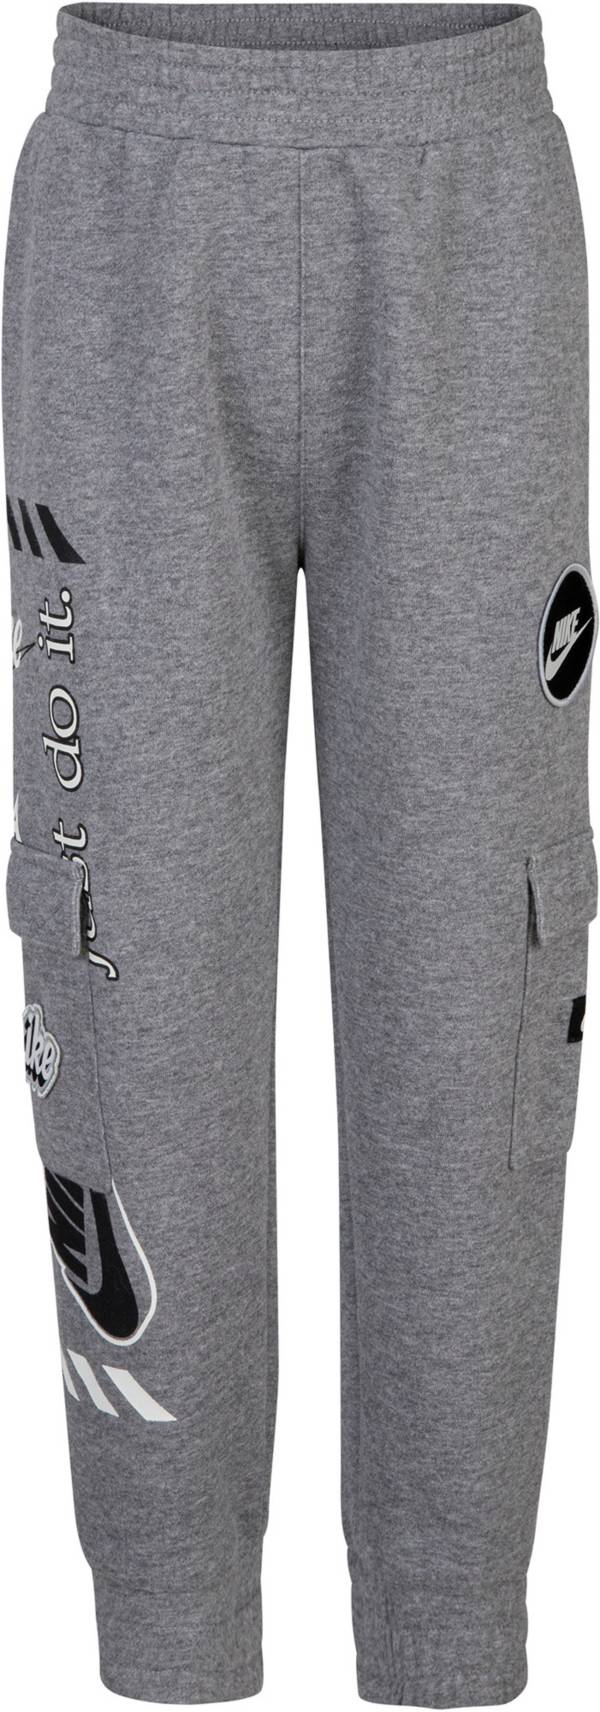 Nike Boys' Fleece Cargo Pants product image